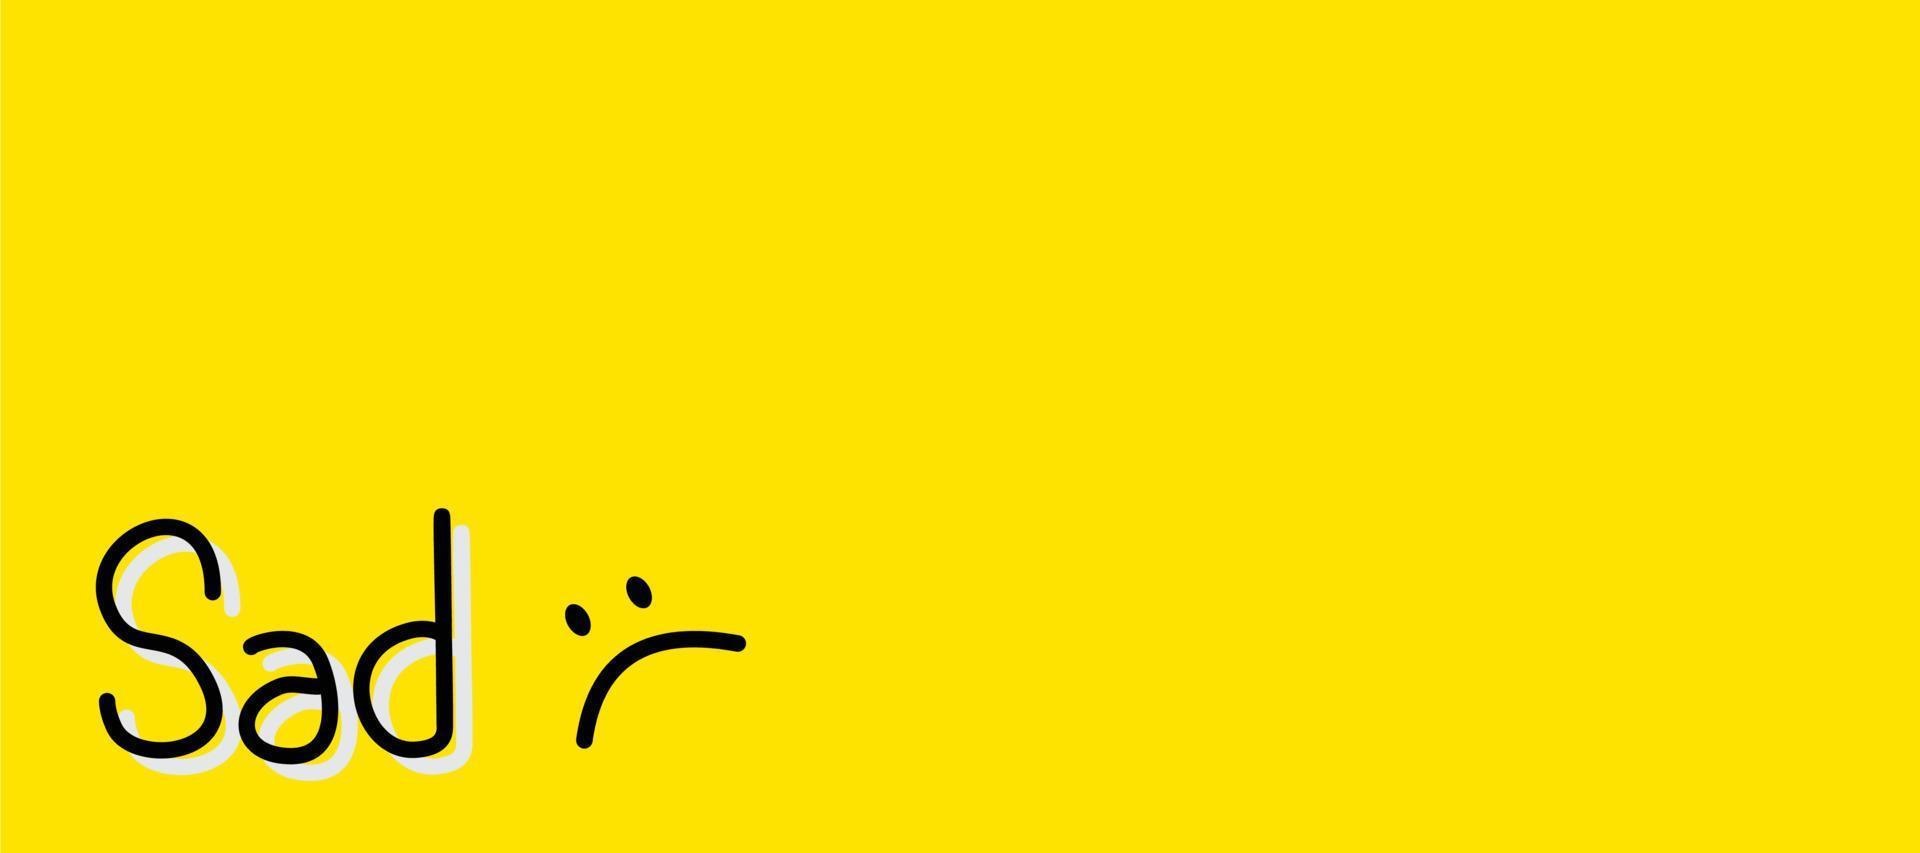 conception de vecteur de fond jaune avec lettrage triste